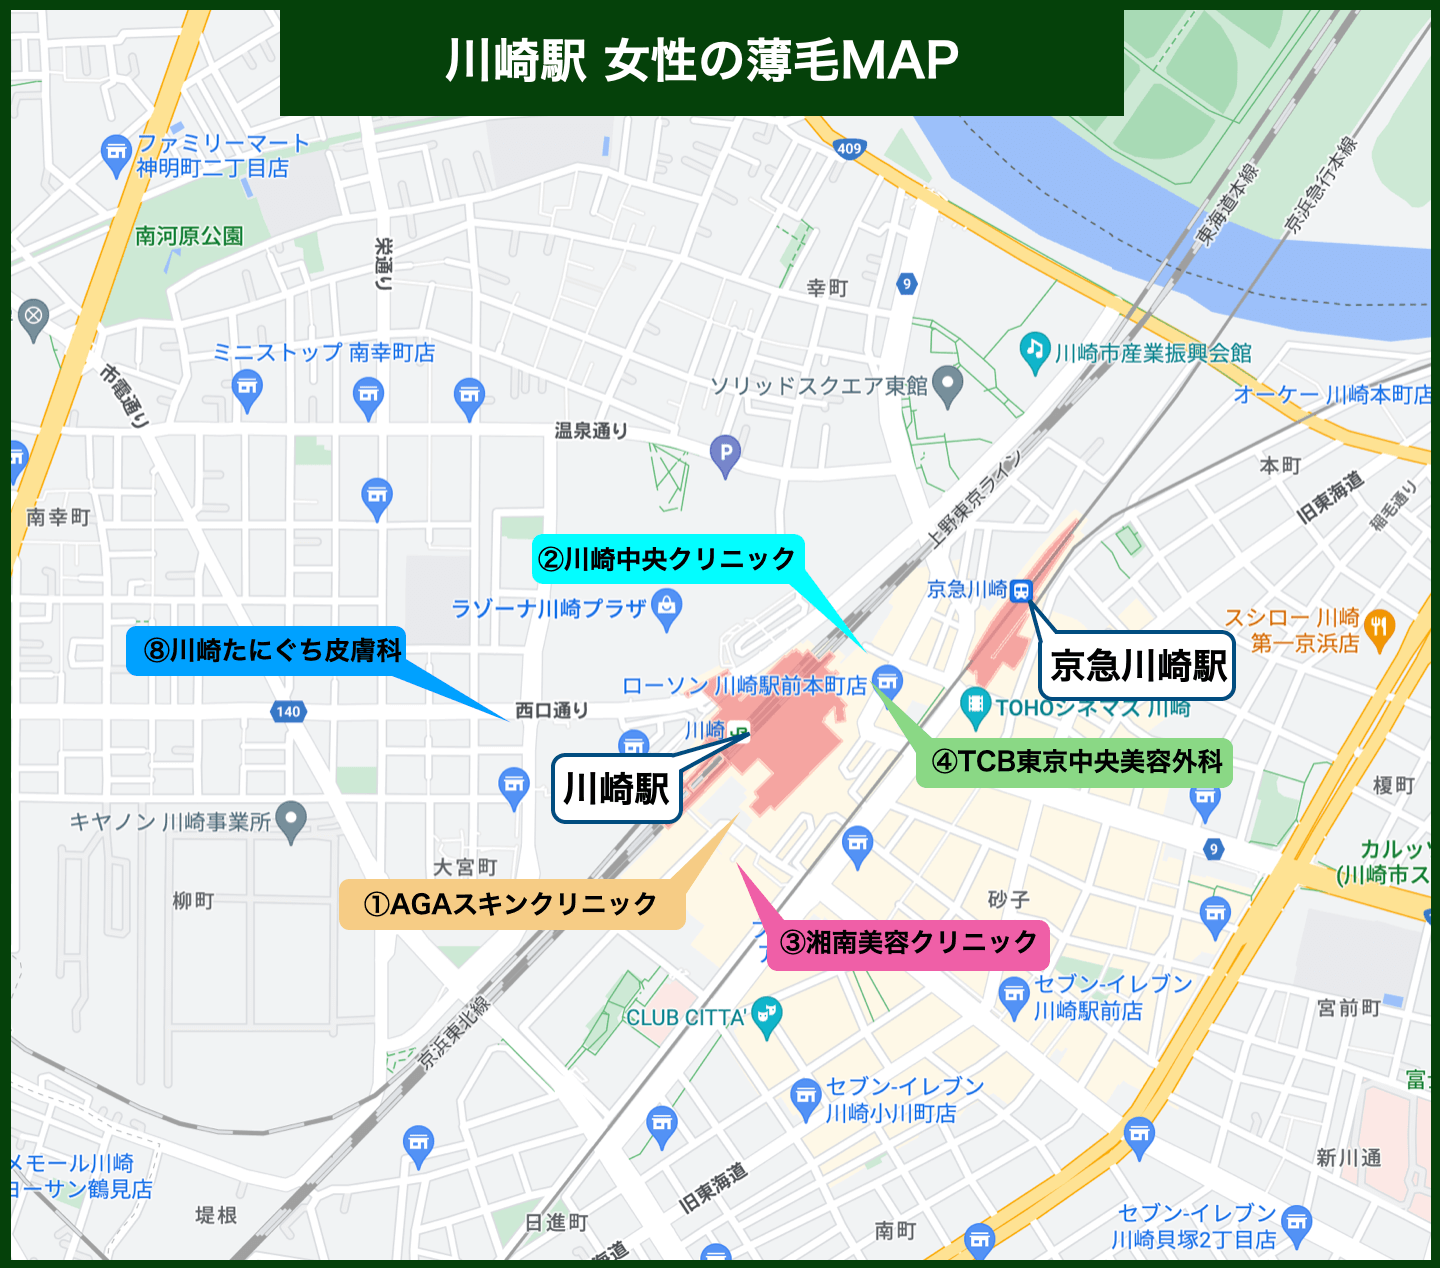 川崎駅女性の薄毛MAP